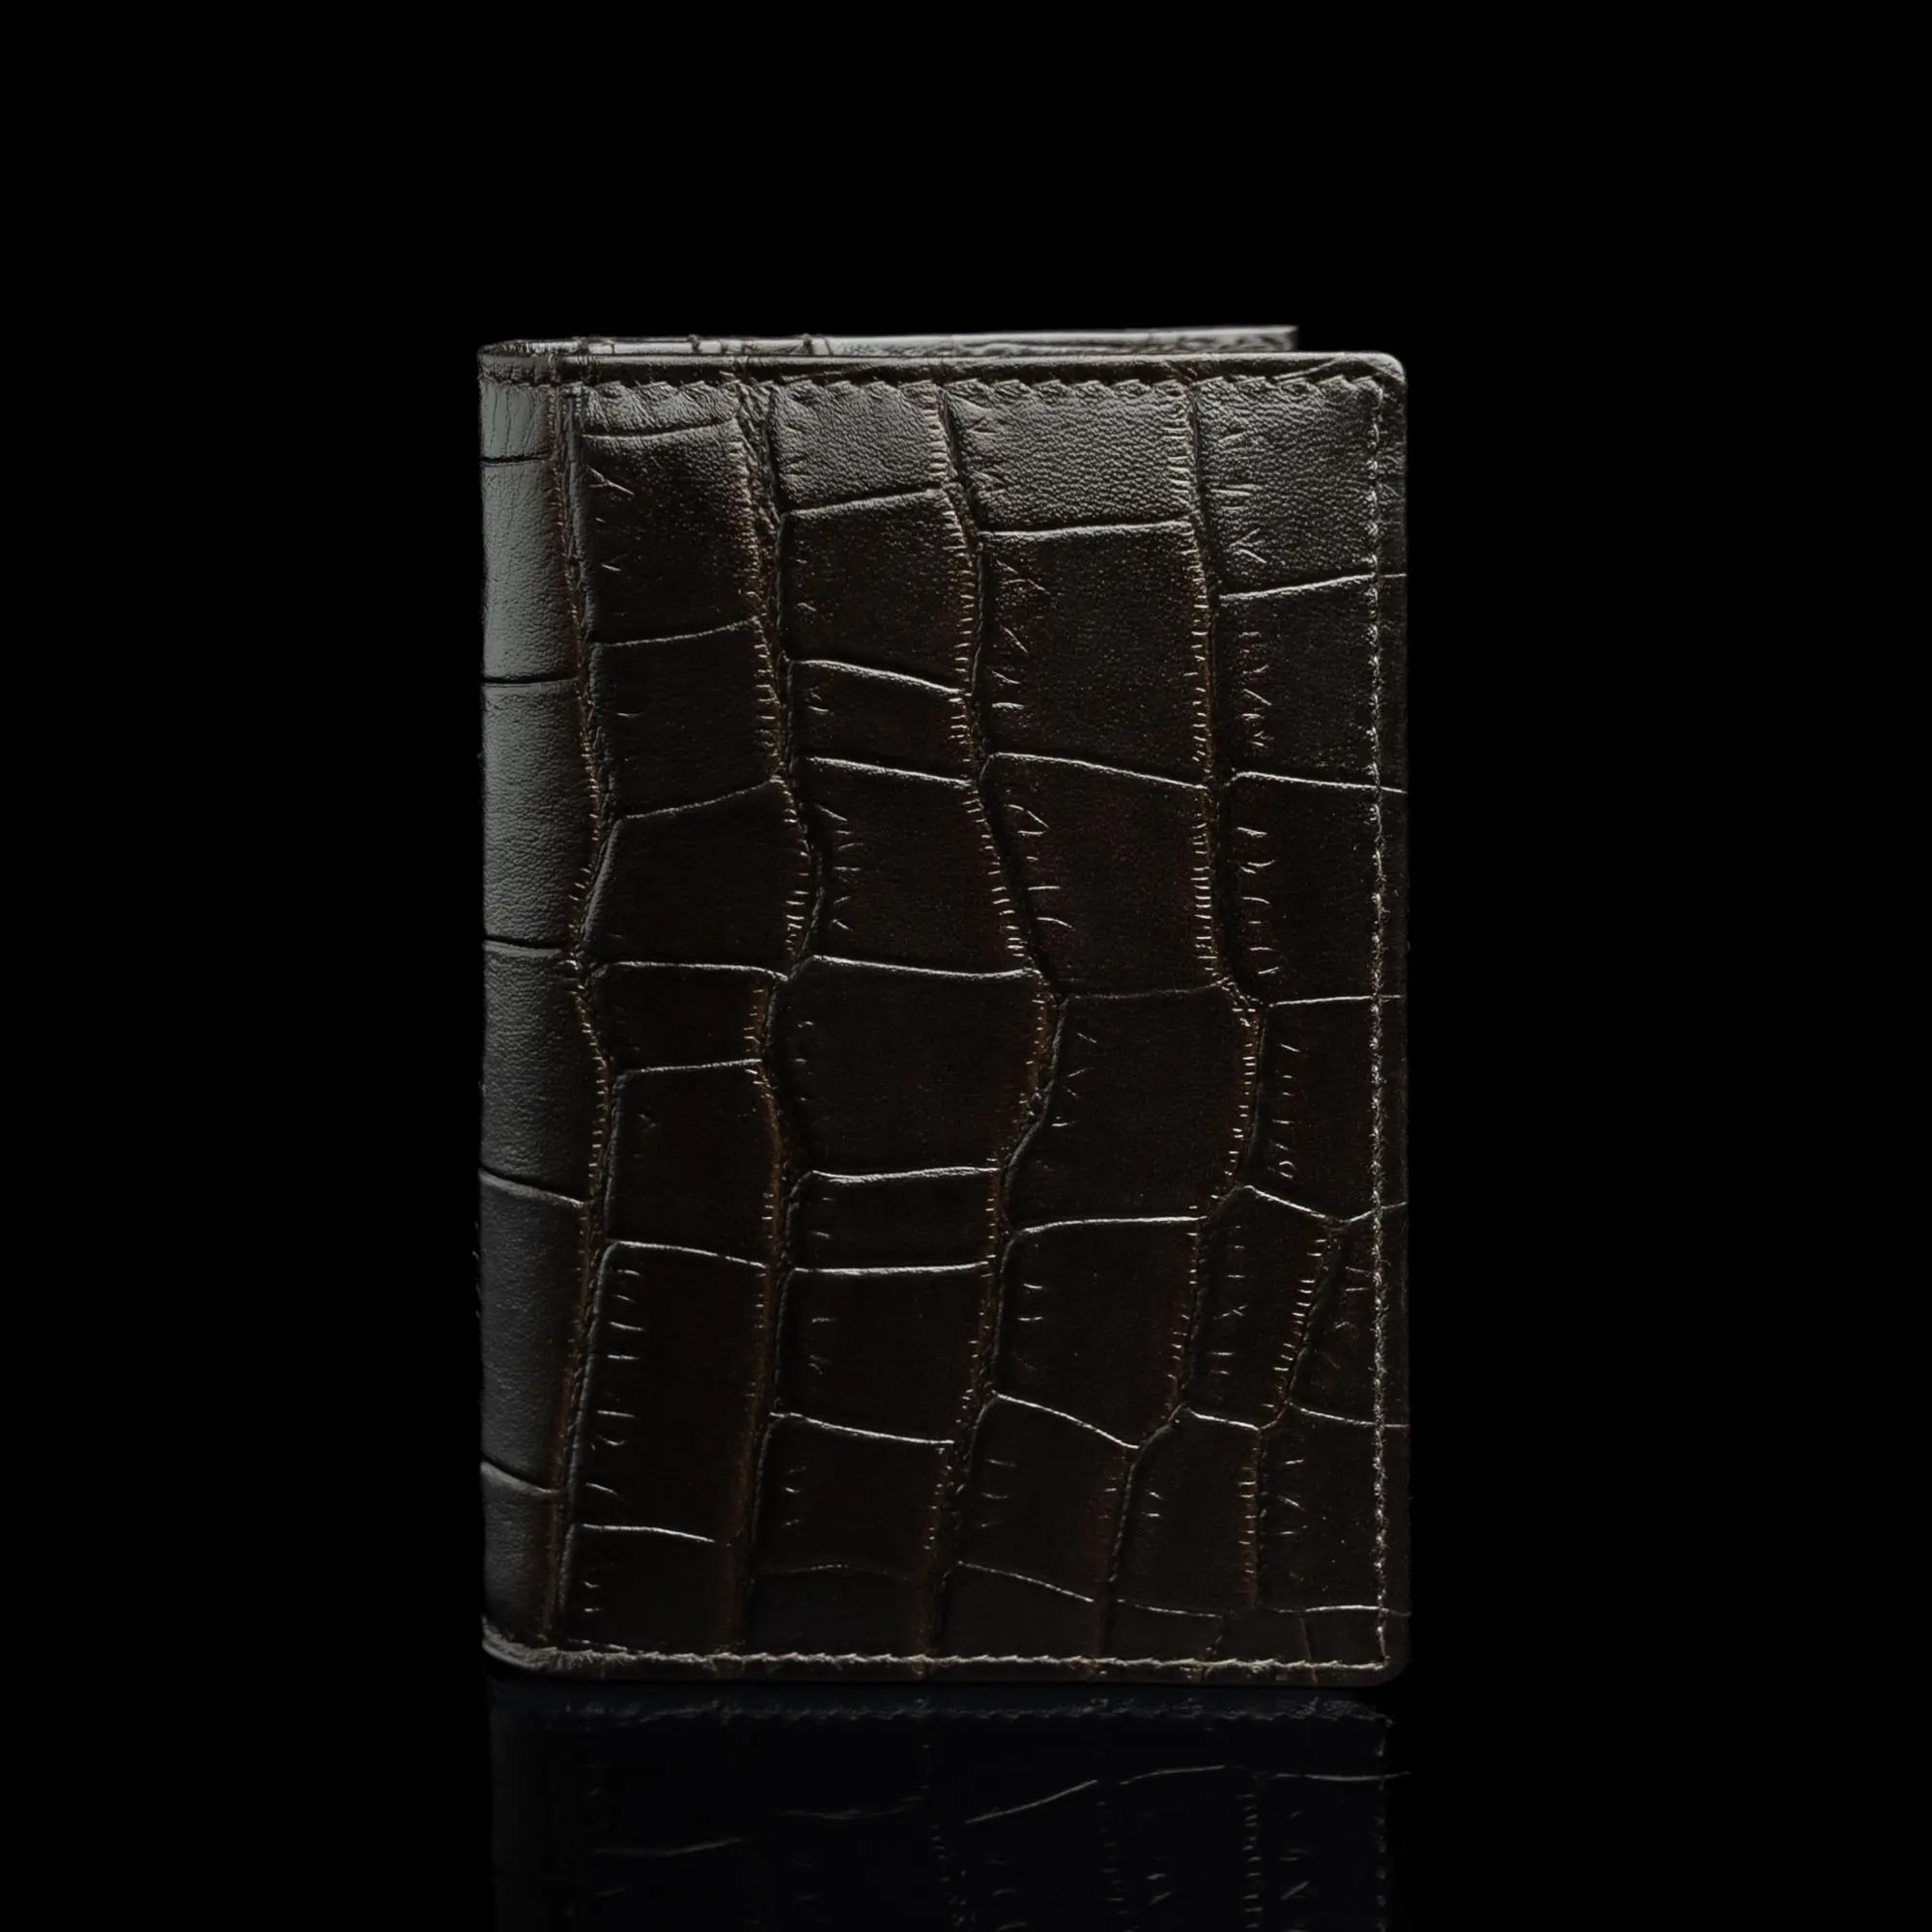 von baer luksuslik rfid grant nahast kaardihoidja croco print tumepruun eestvaade